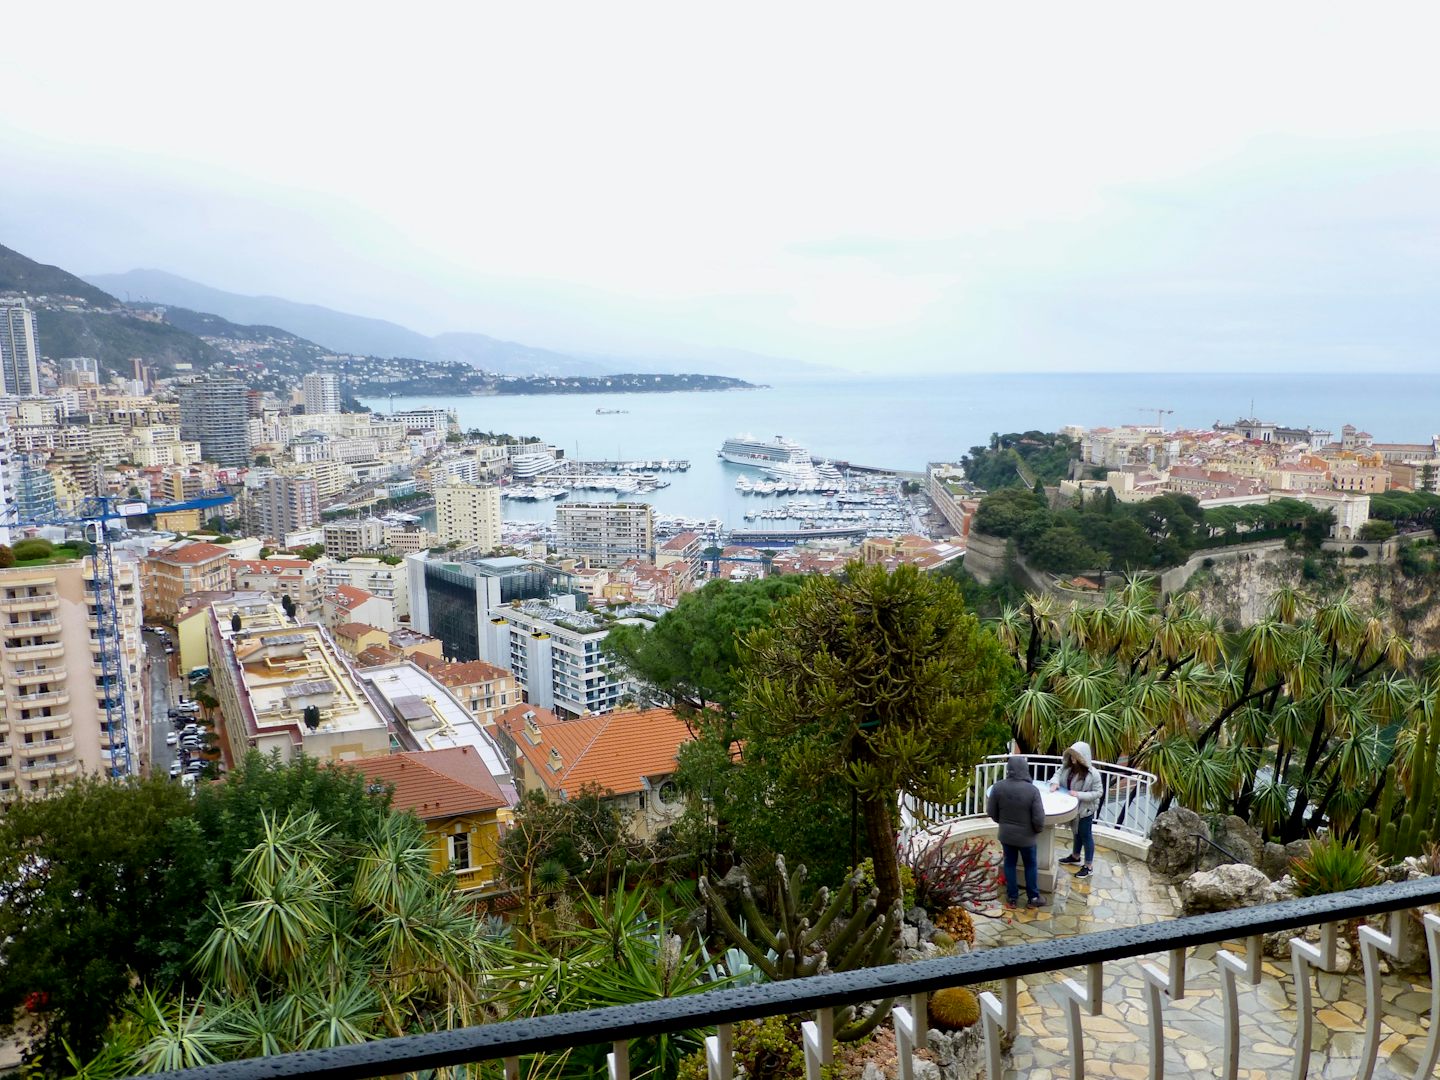 Monaco Gardens excursion overlook of Monaco